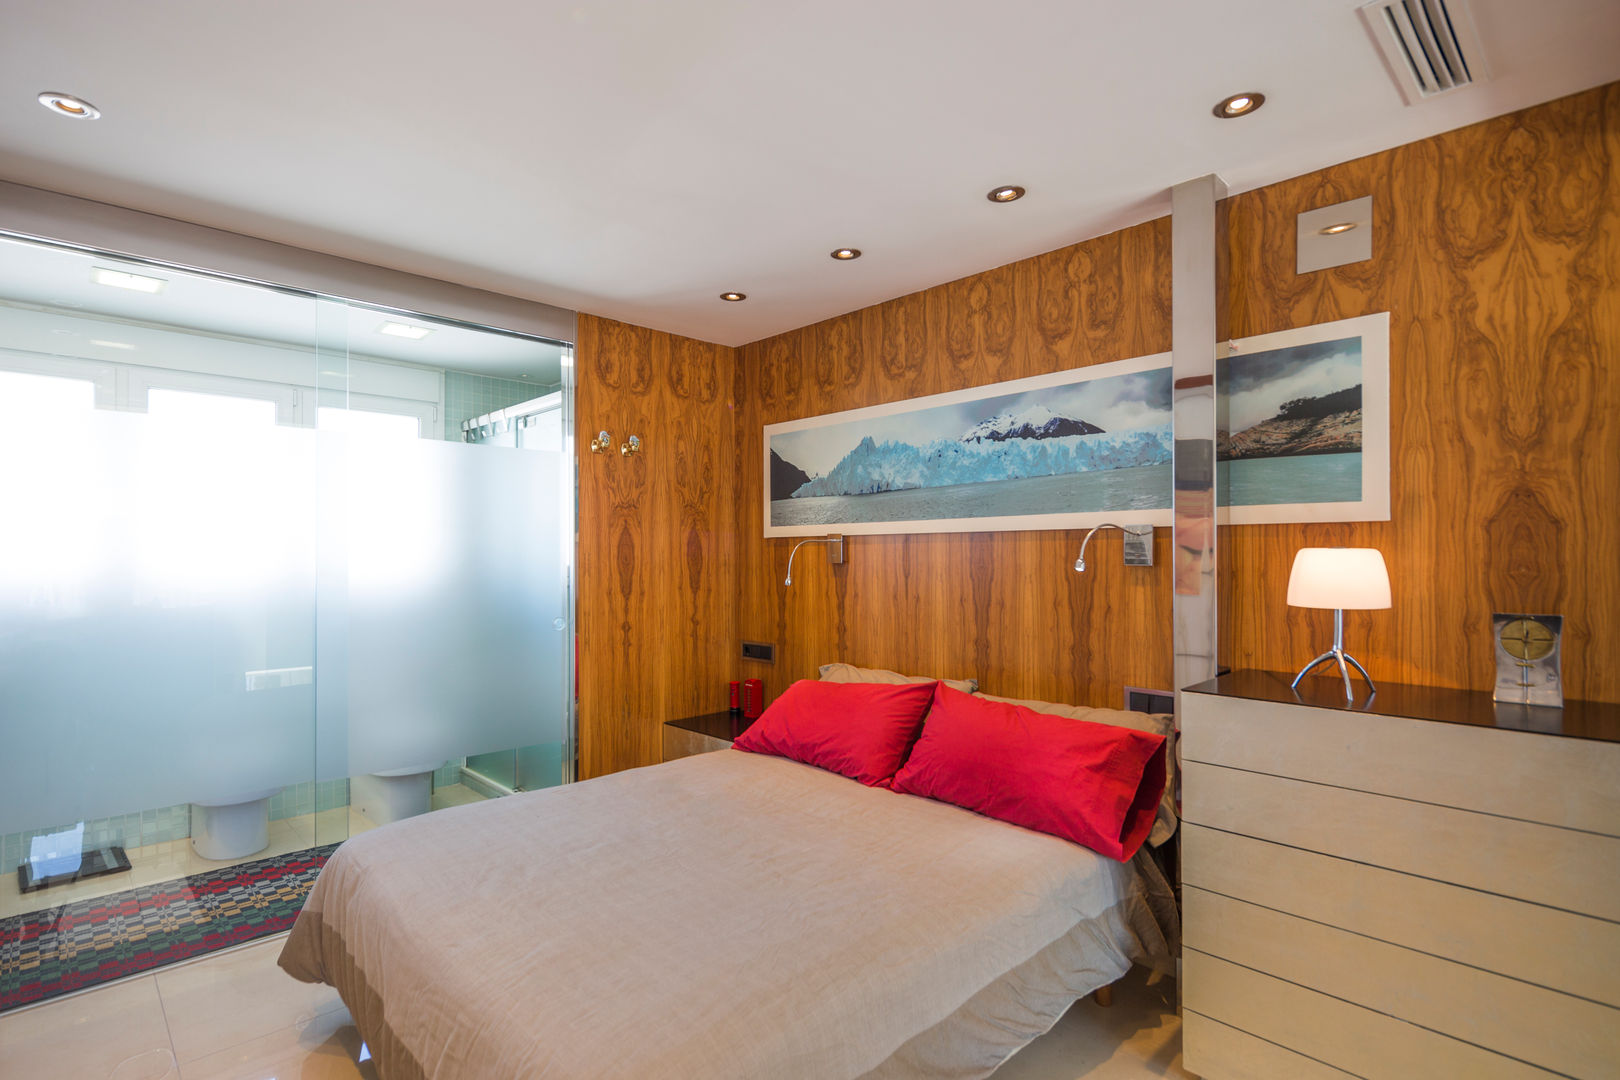 Dormitorio panelado en madera. Barreres del Mundo Architects. Arquitectos e interioristas en Valencia. Dormitorios pequeños Madera Acabado en madera dormitorio, habitación, cristal, madera